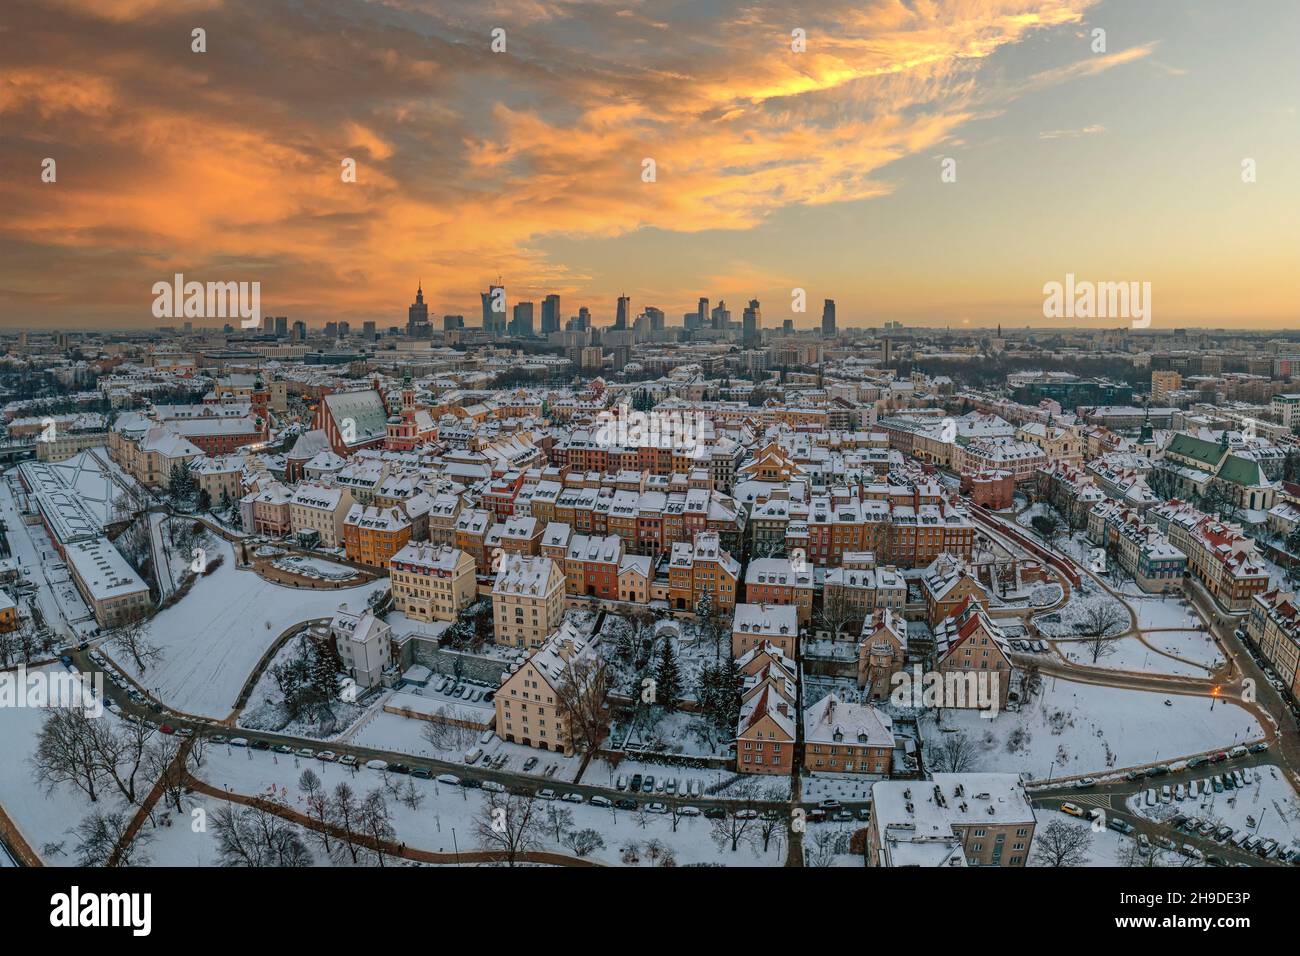 Ciudad vieja de Varsovia, techos cubiertos de nieve y el centro de la ciudad distante al atardecer, panorama aéreo de invierno Foto de stock